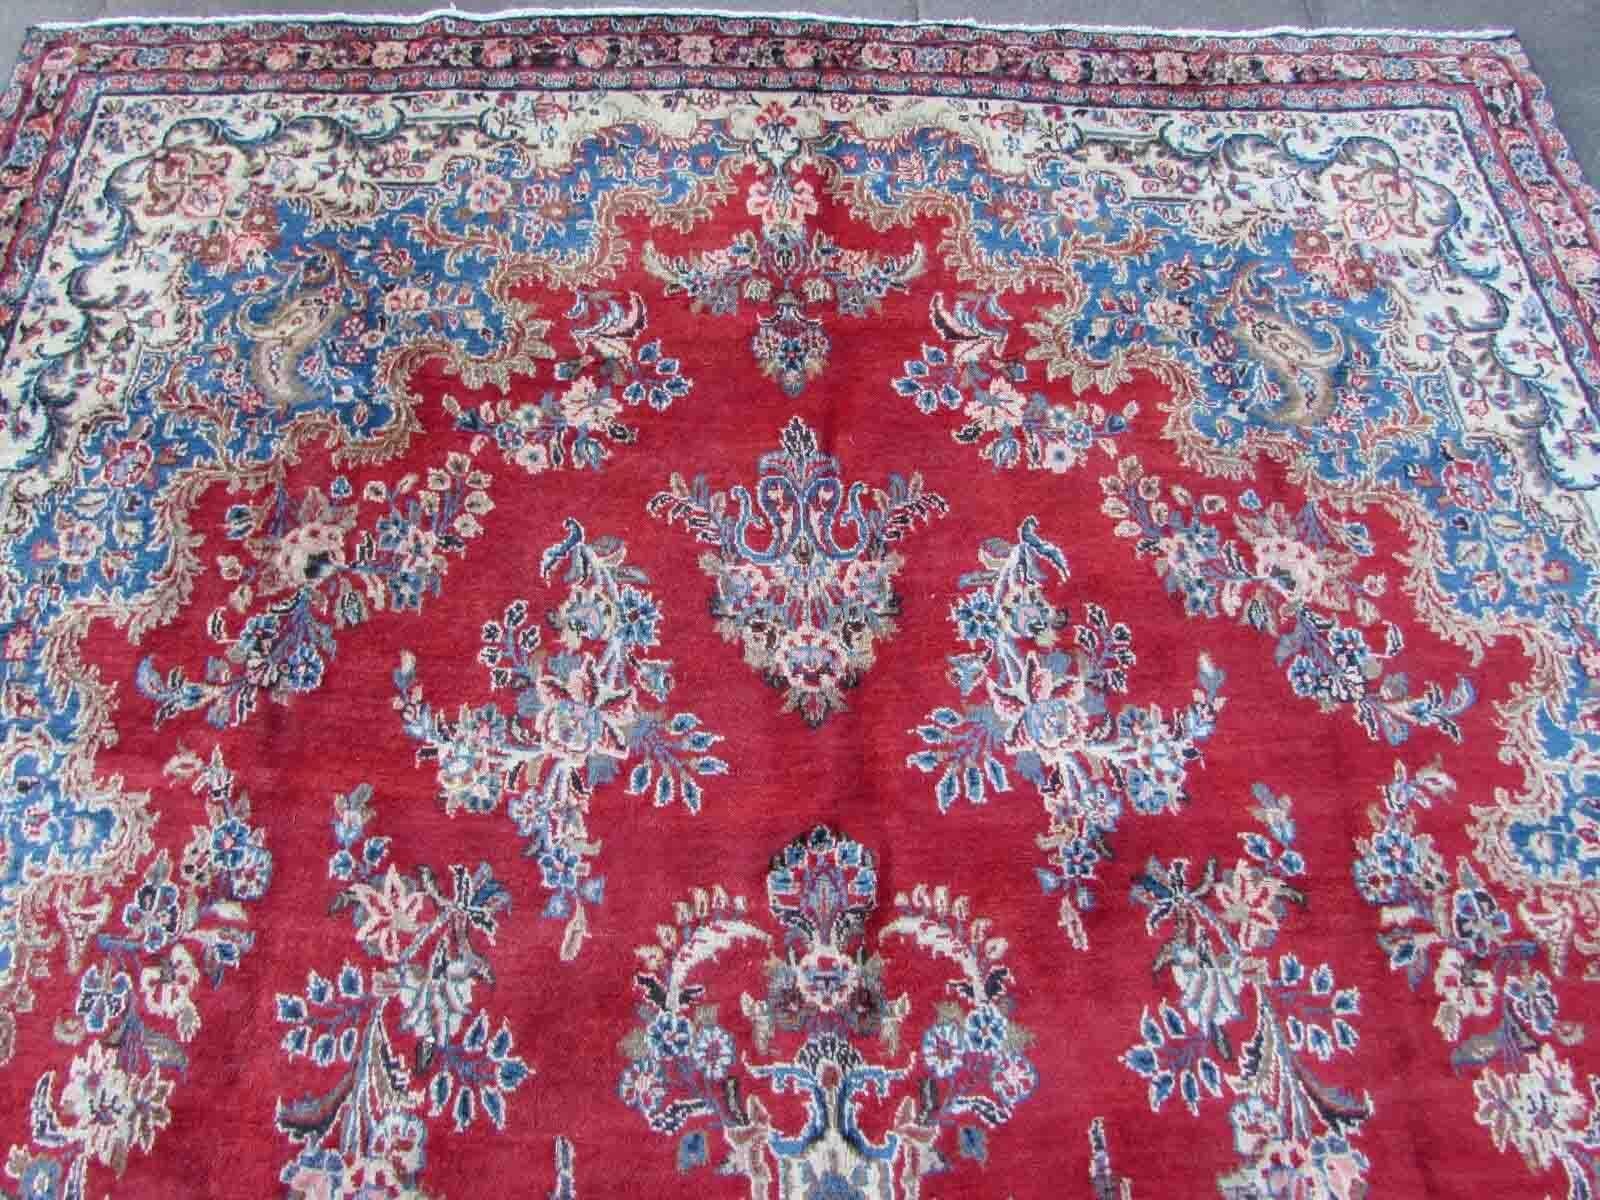 Handgefertigter Vintage-Teppich aus Kerman in leuchtendem Rot und Himmelblau. Der Teppich stammt aus dem Ende des 20. Jahrhunderts und ist im Originalzustand, er hat einen etwas niedrigen Flor.

-Zustand: original, etwas niedriger Flor,